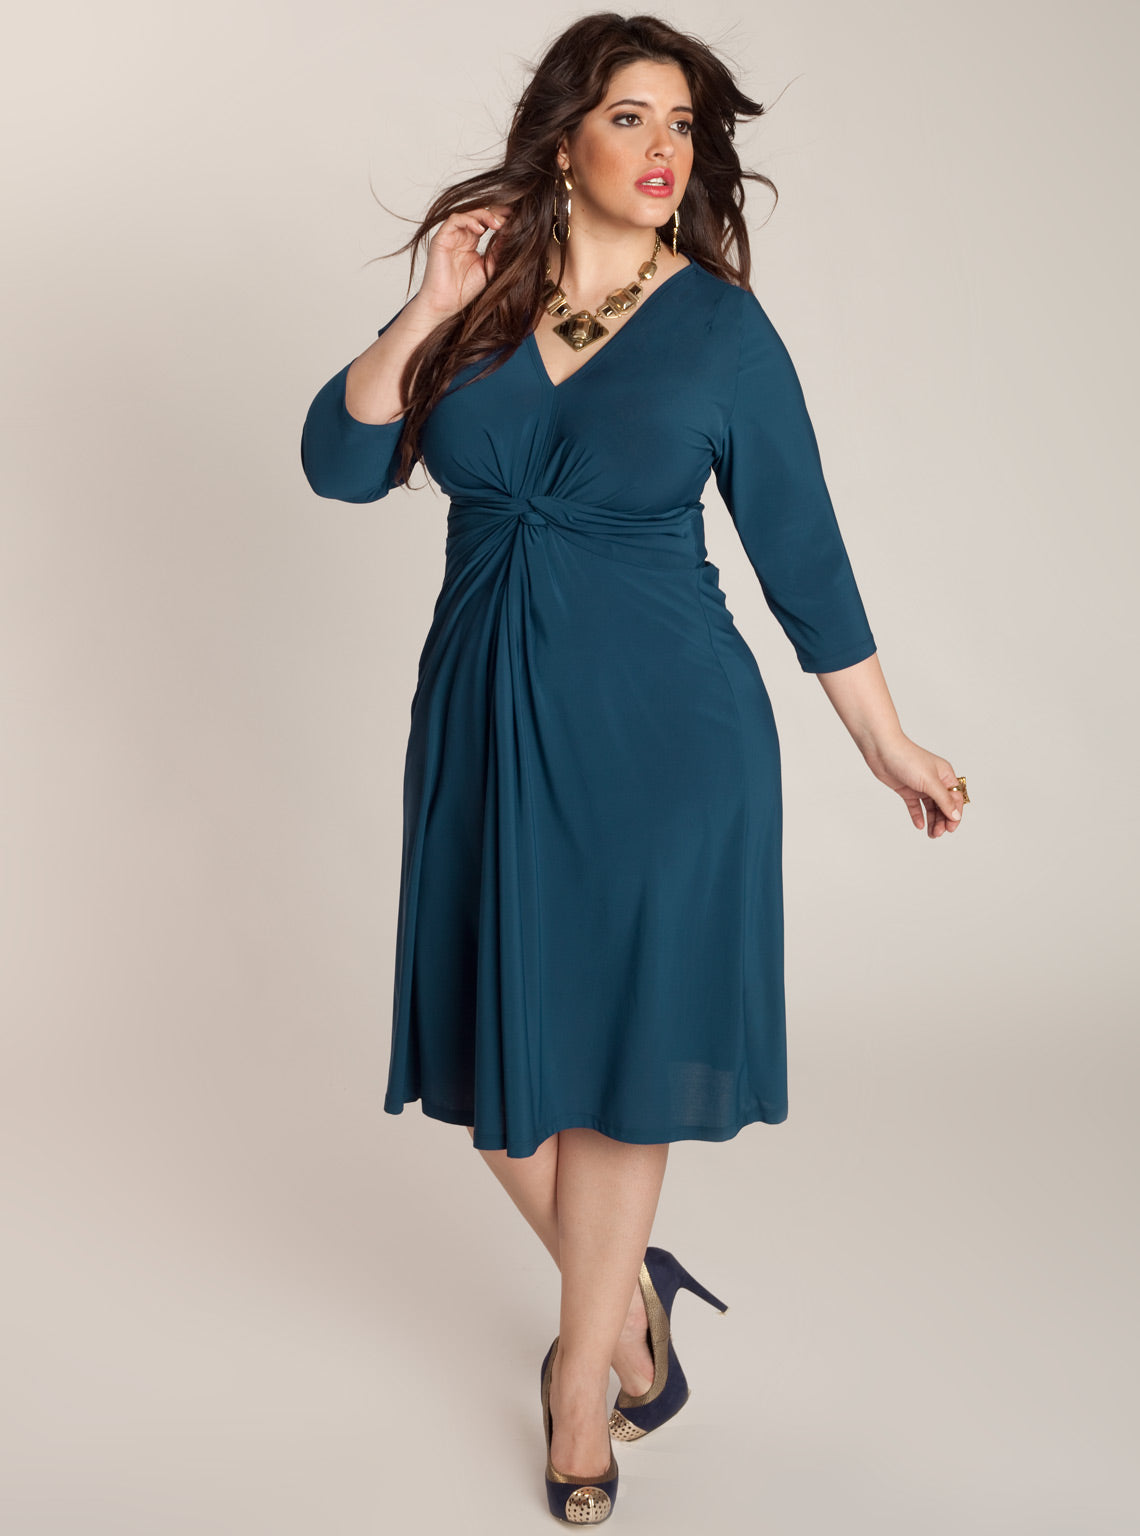 Blue plus size wrap dress | IGIGI.com